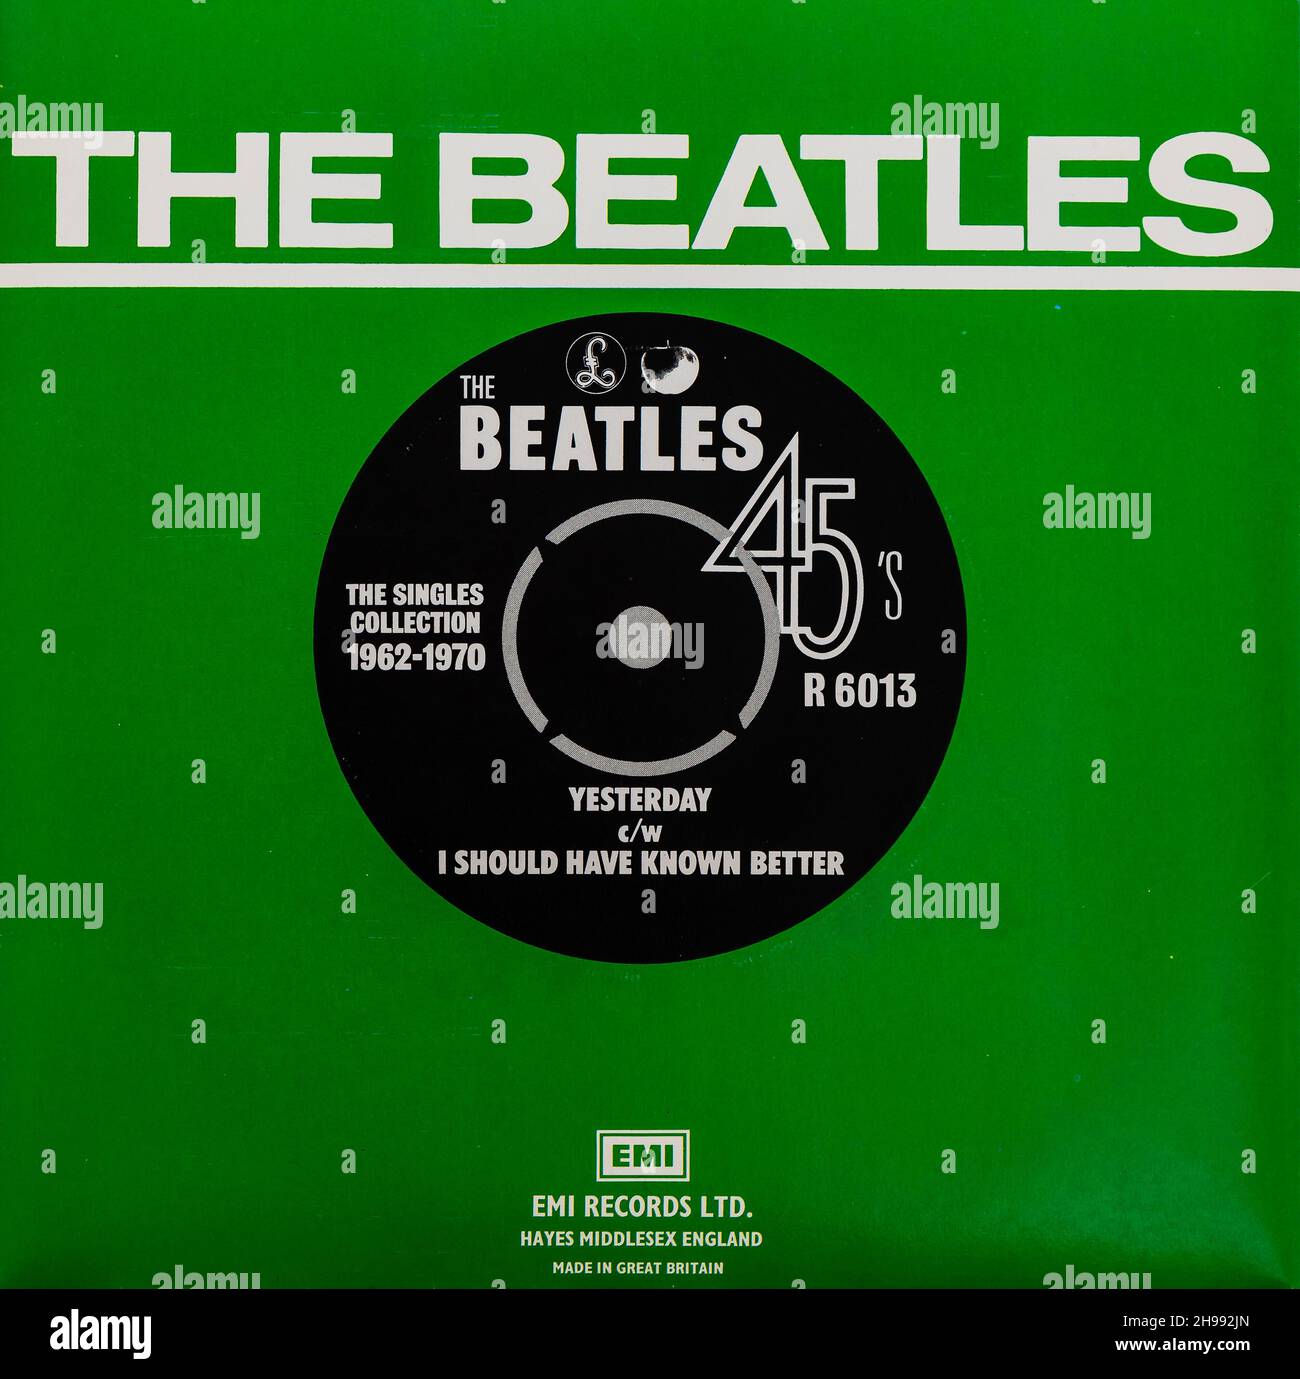 EMI Vinyl 45 - The Beatles - The Beatles 45 y compris hier. Banque D'Images